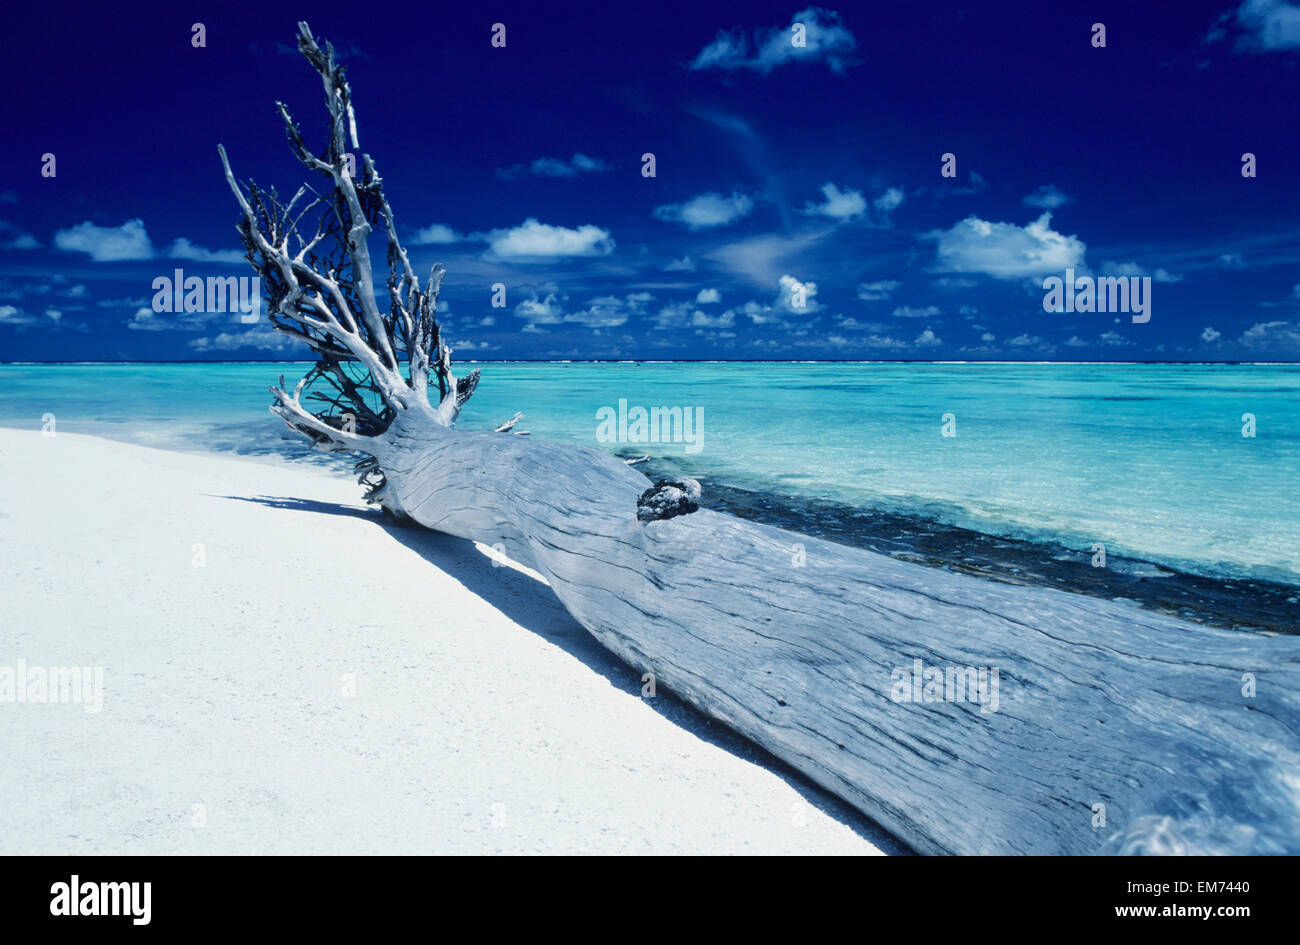 French Polynesia, Tetiaroa (Marlon Brando's Island), Driftwood On White Sand Beach. Stock Photo